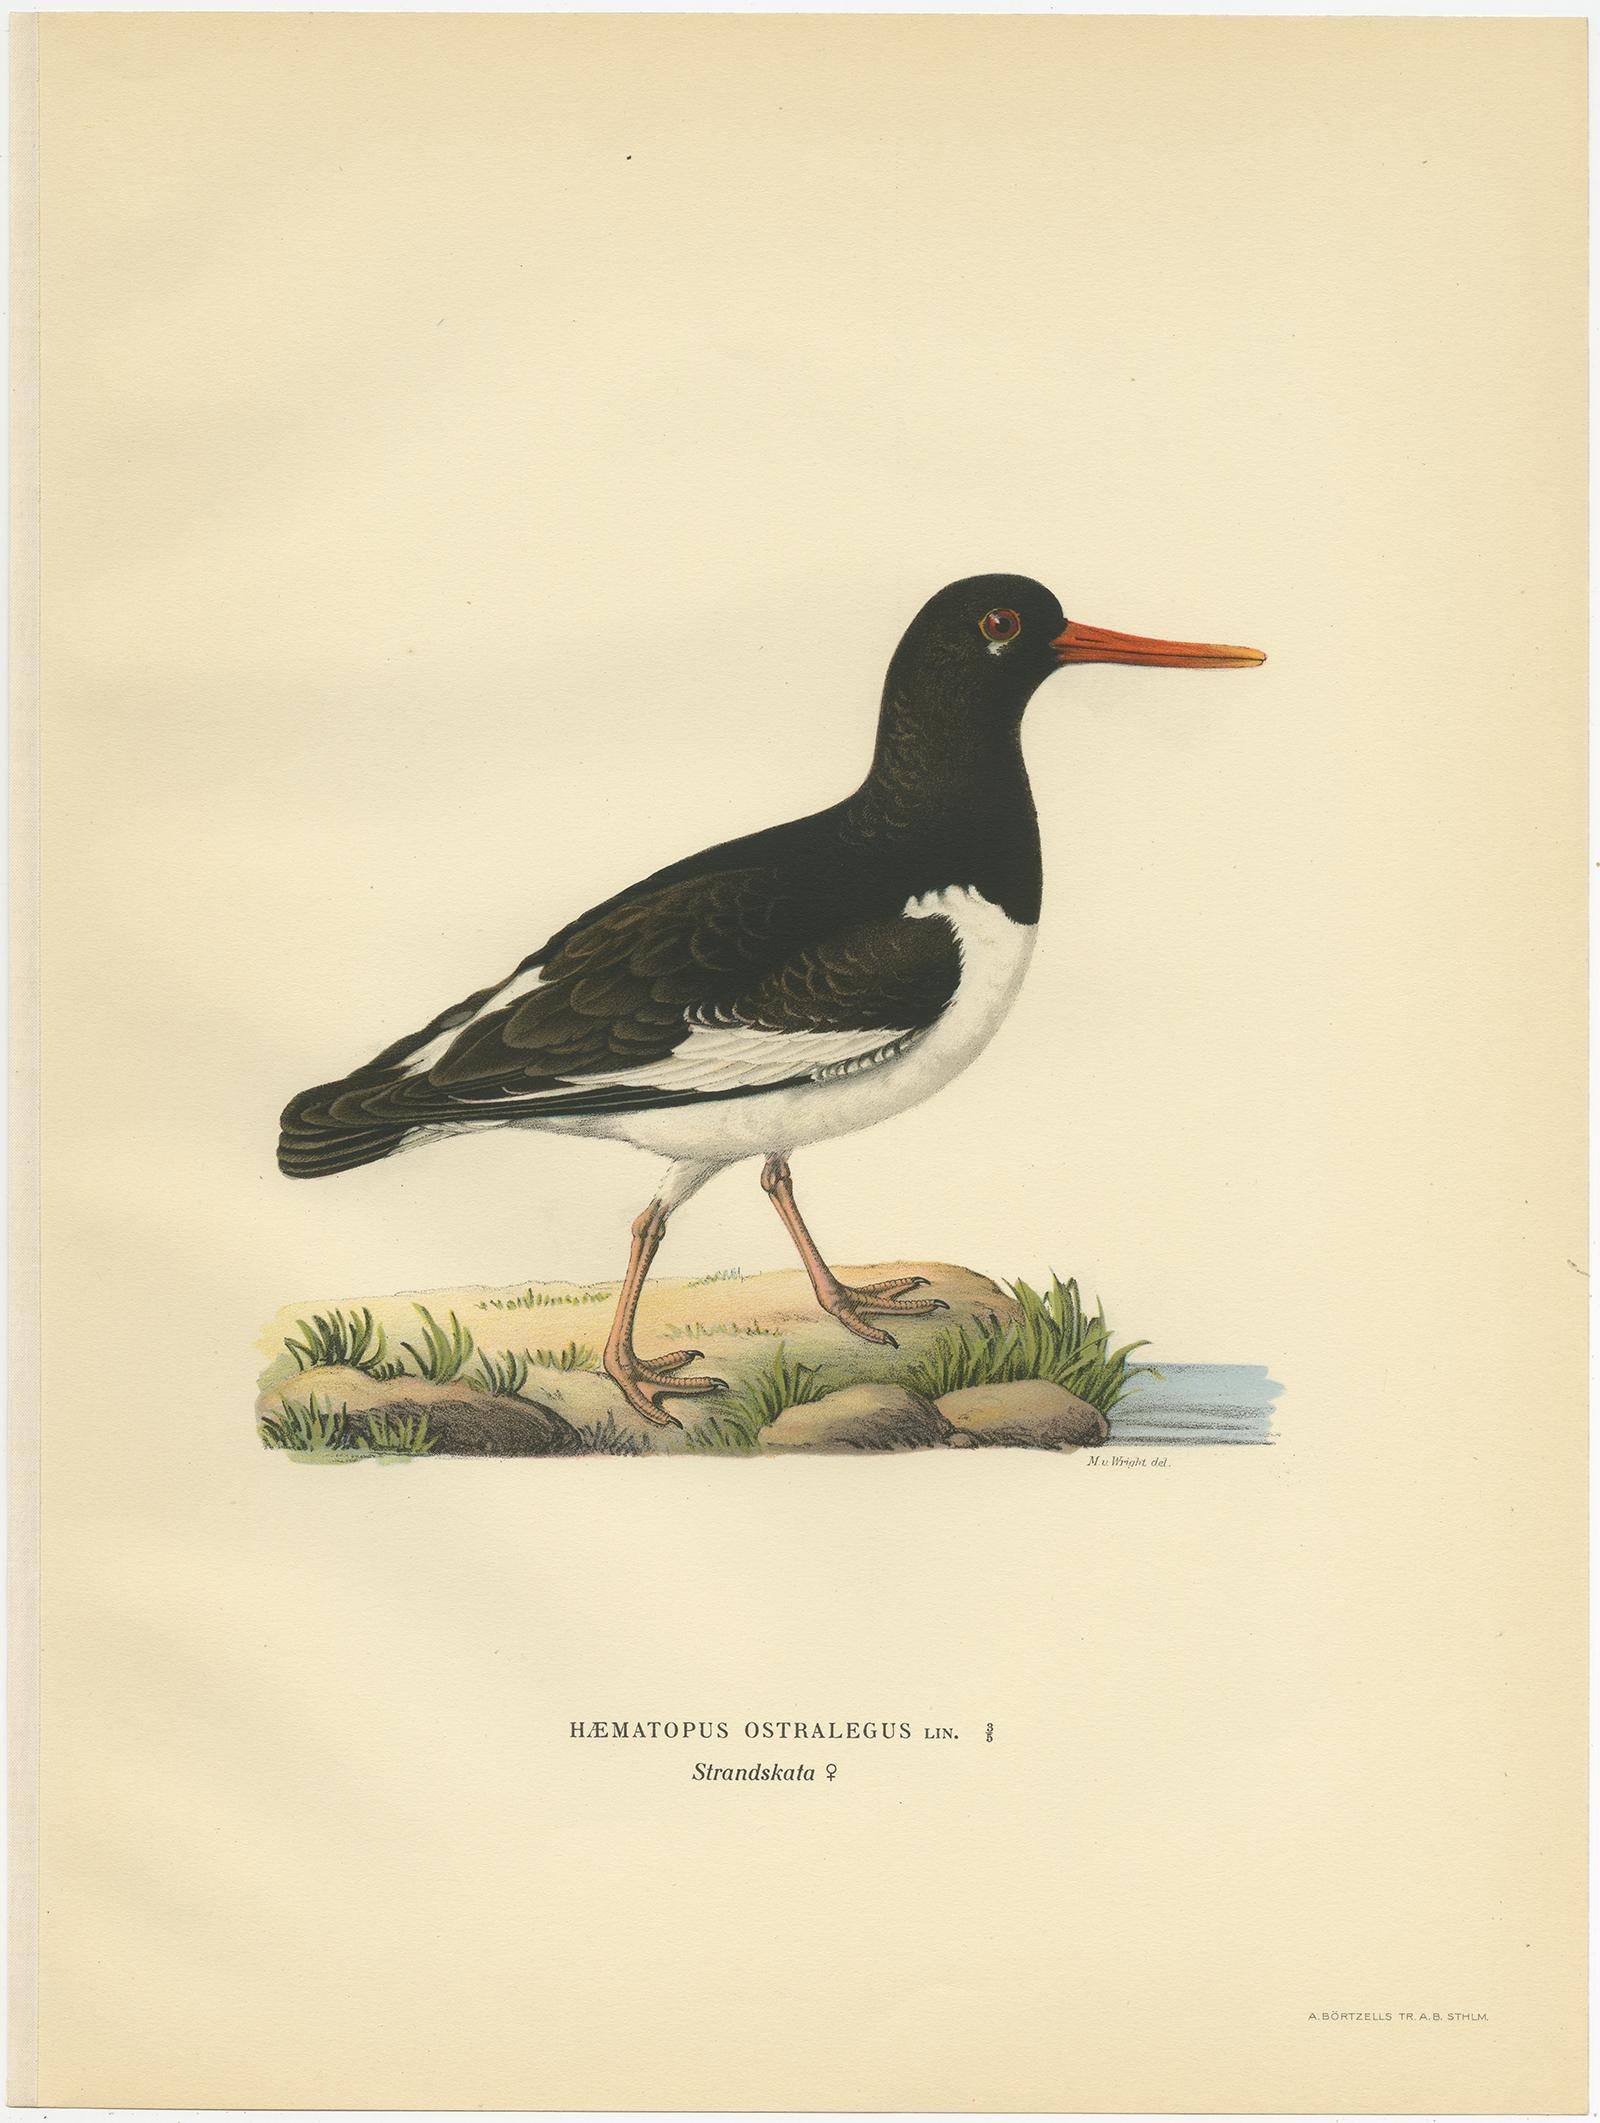 Antiker Vogeldruck mit dem Titel 'Hematopus Ostralegus'. Alter Vogeldruck, der den Austernfischer darstellt. Dieser Druck stammt aus 